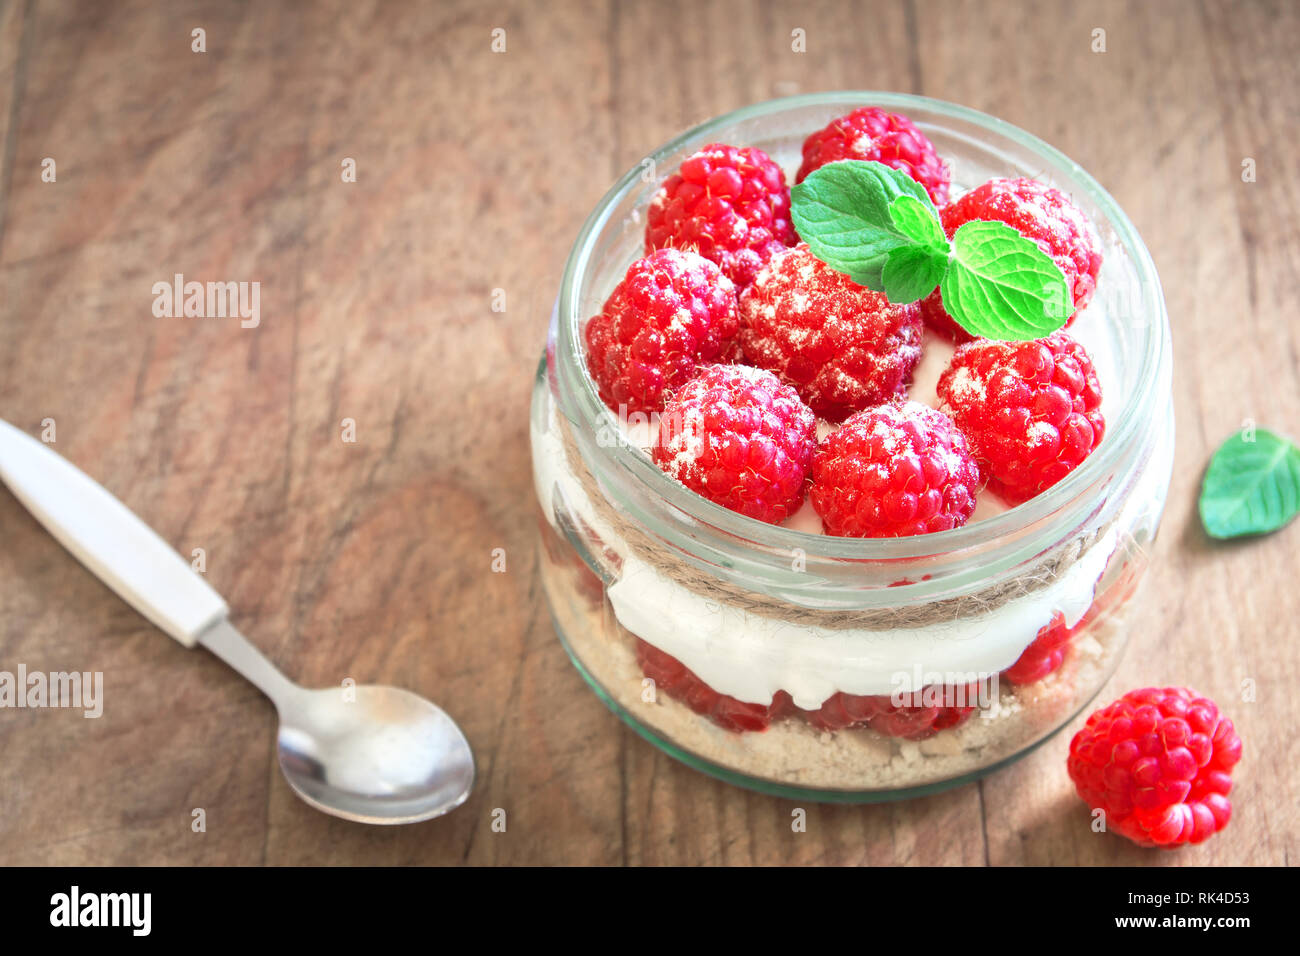 Raspberry layered dessert - cheesecake in glass jar with fresh raspberries and cream cheese. Healthy homemade summer berry dessert. Stock Photo